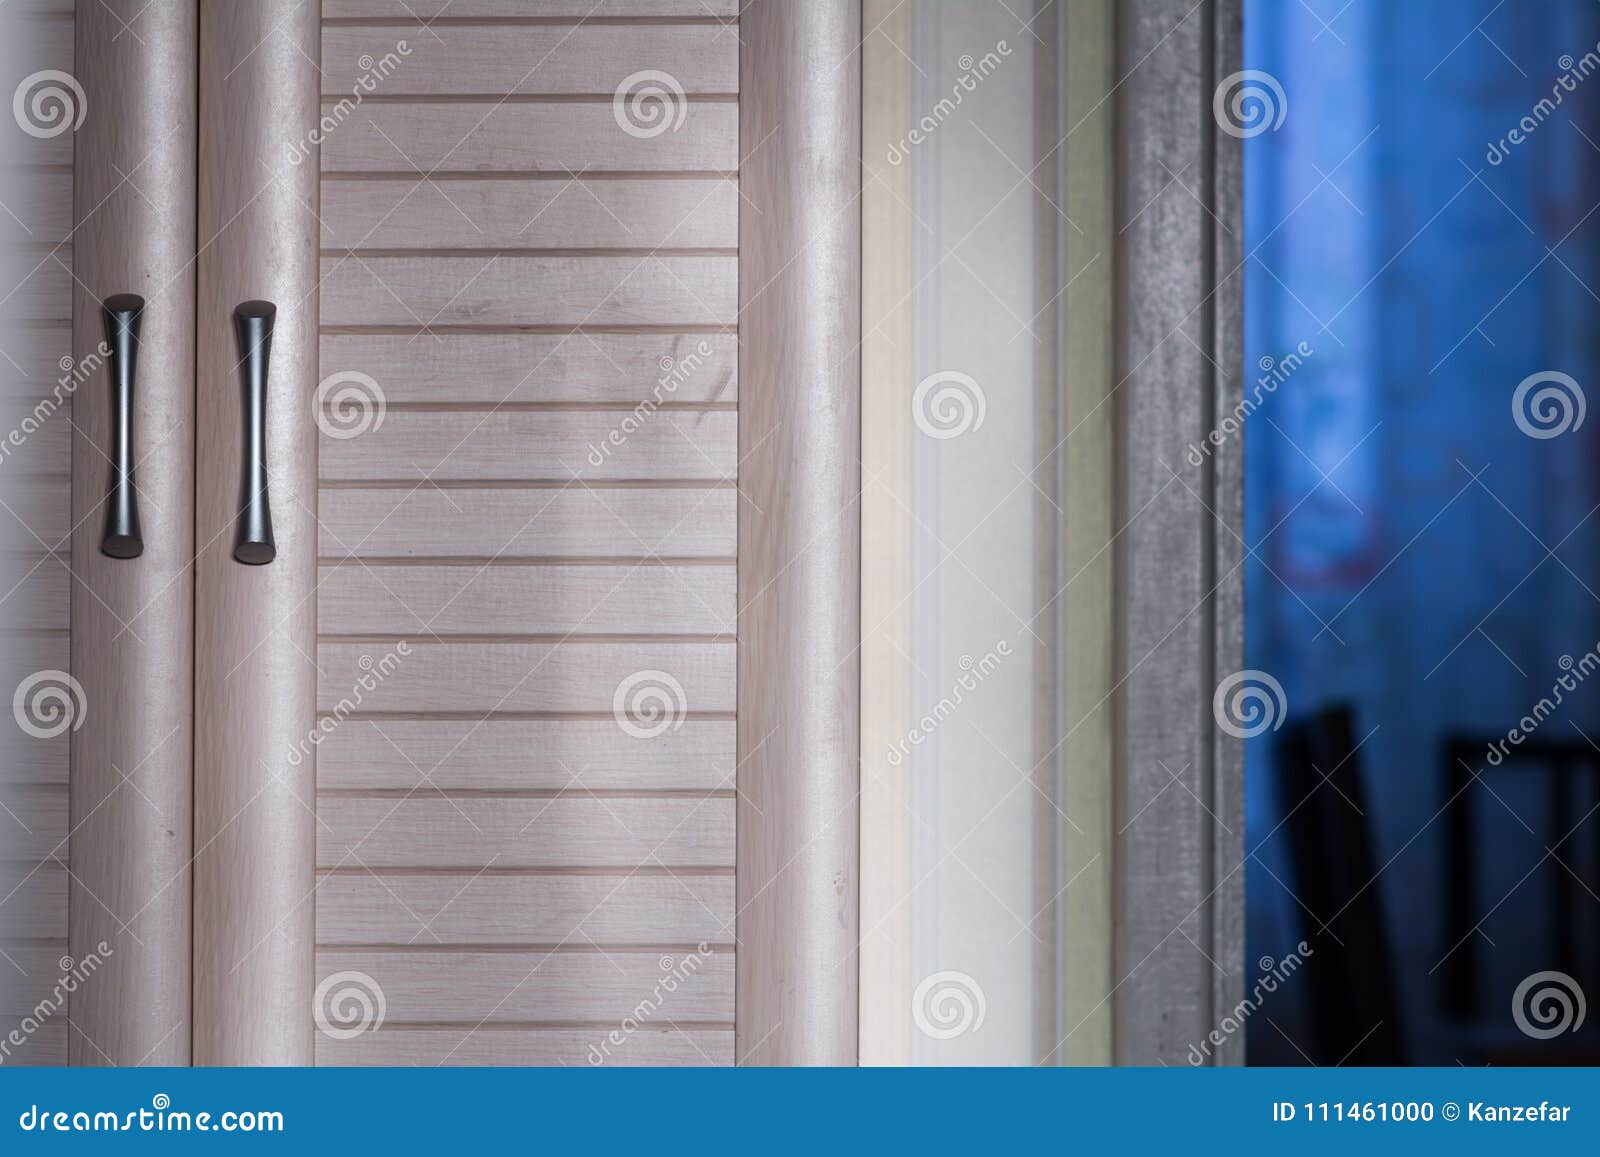 Cabinet Door With Handles Stock Photo Image Of Doorlock 111461000